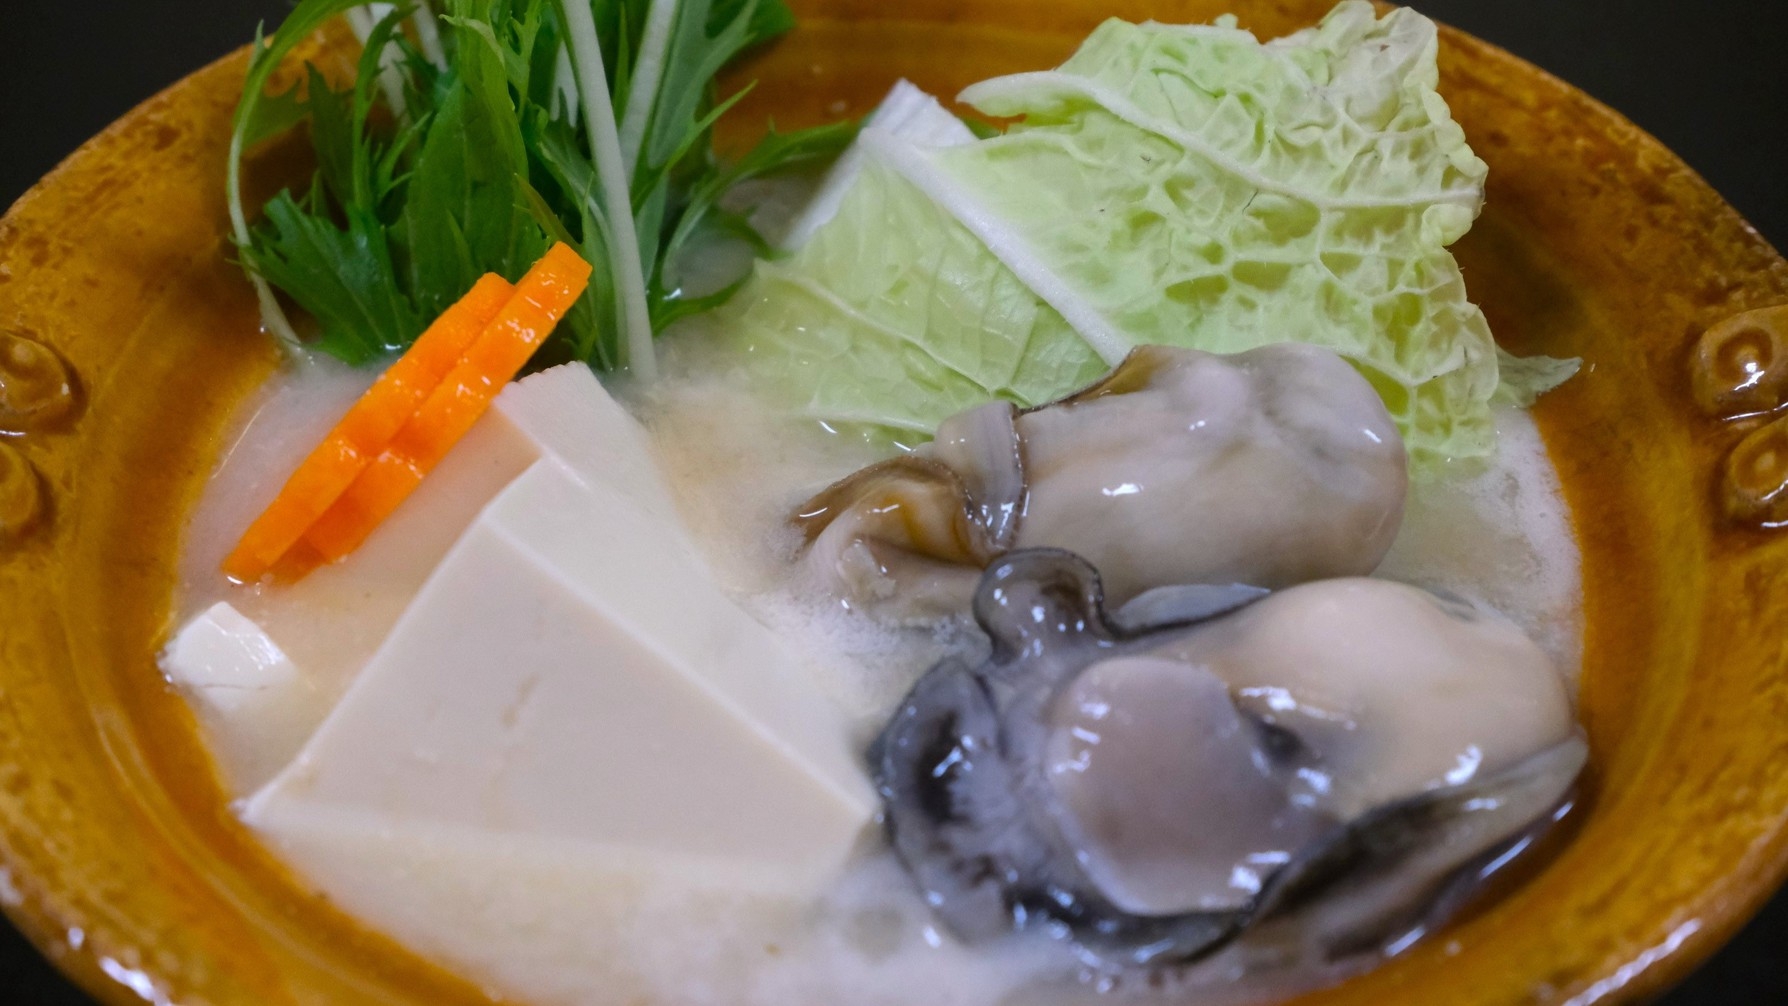 【夏限定】1日3組限定◆「天然岩牡蠣」尽くしコース◆岩牡蠣好きには堪らない！7種の岩牡蠣料理